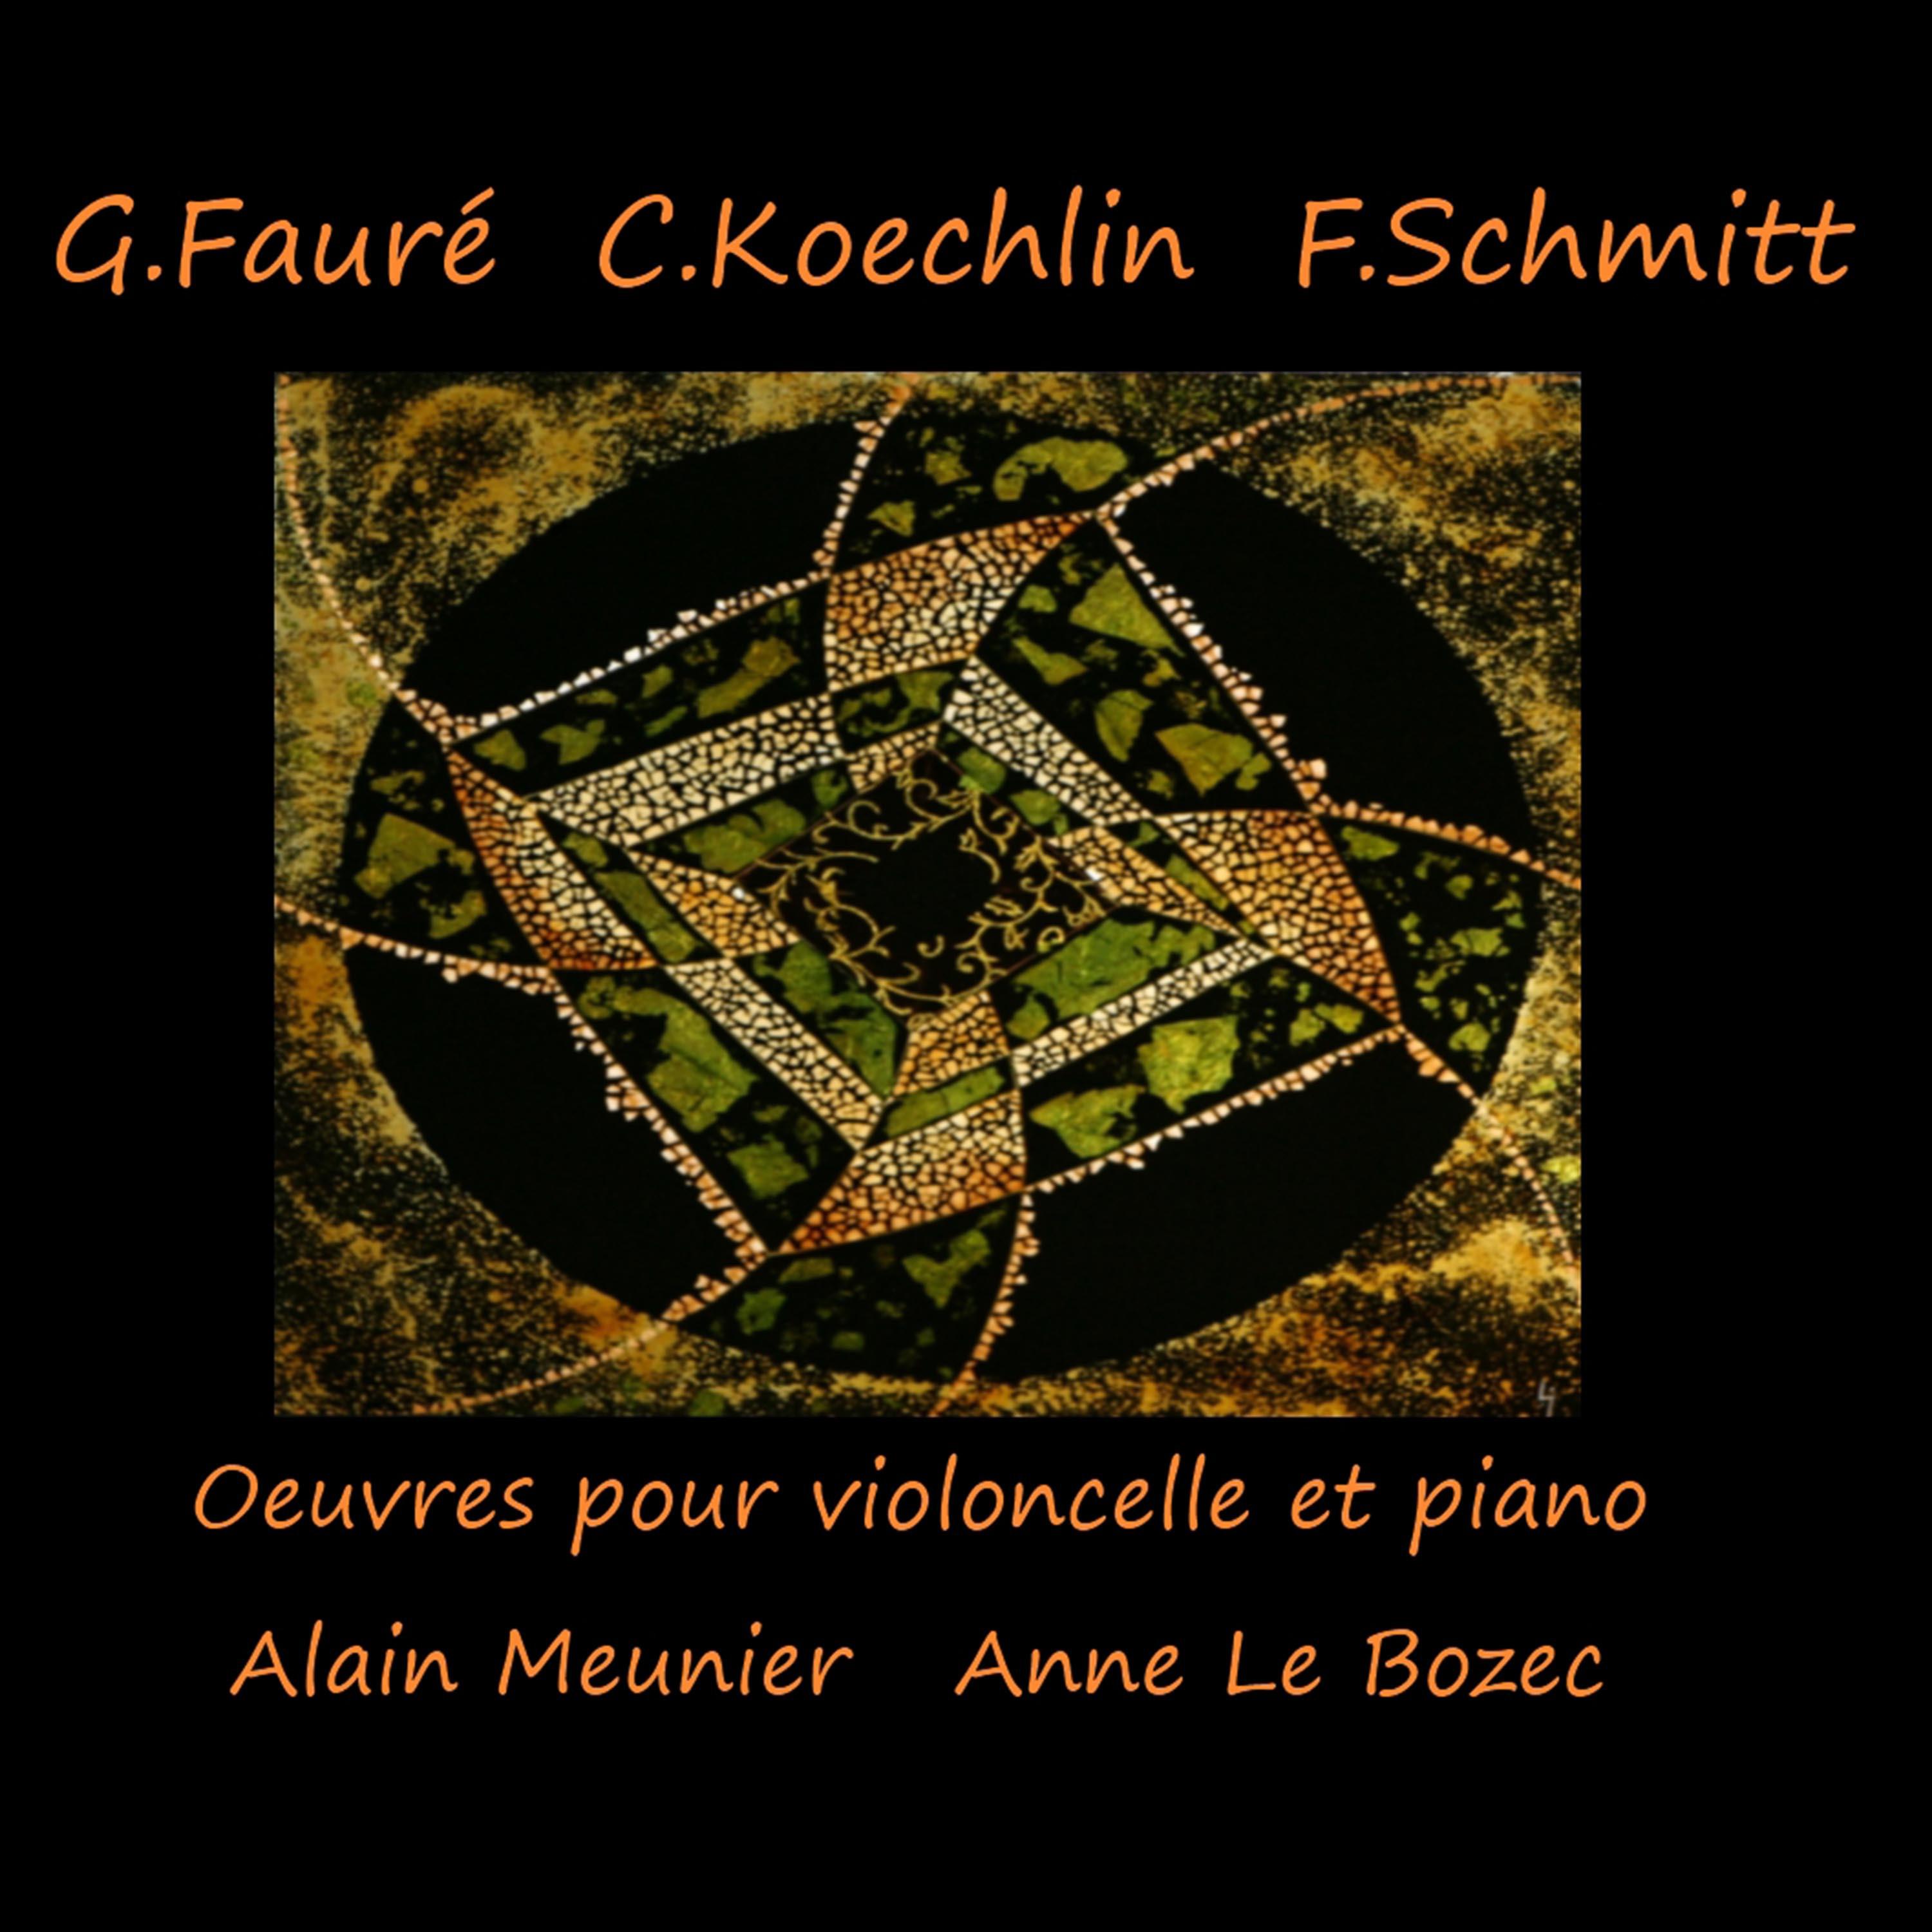 Sonate pour violoncelle et piano en Ut Majeur, Op. 66: I. Tre s mode re